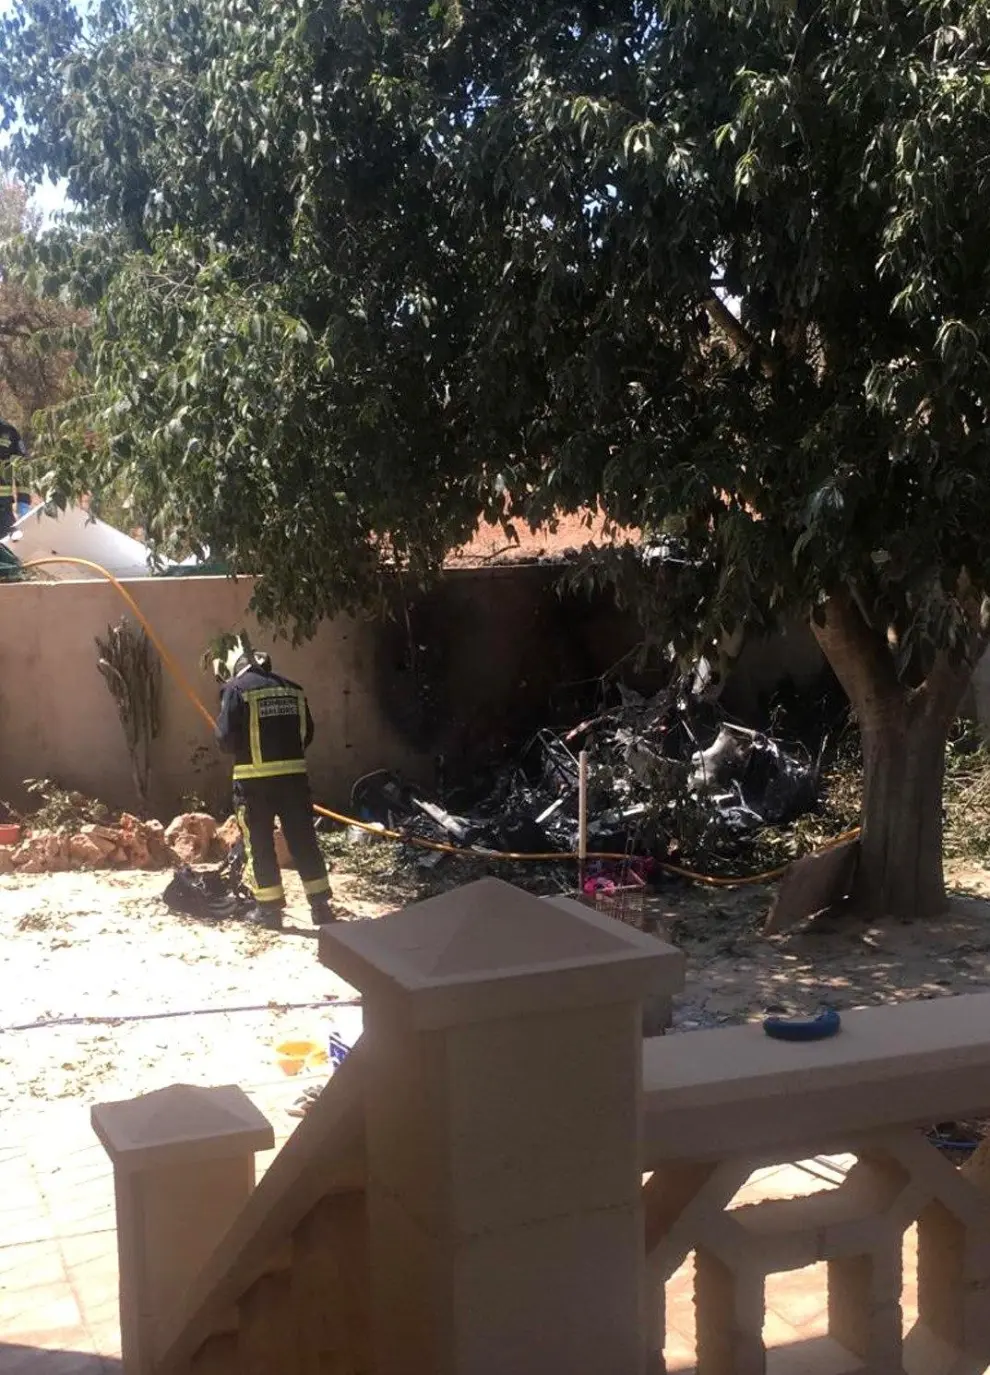 Cinco muertos tras chocar una avioneta y un helicóptero en Mallorca